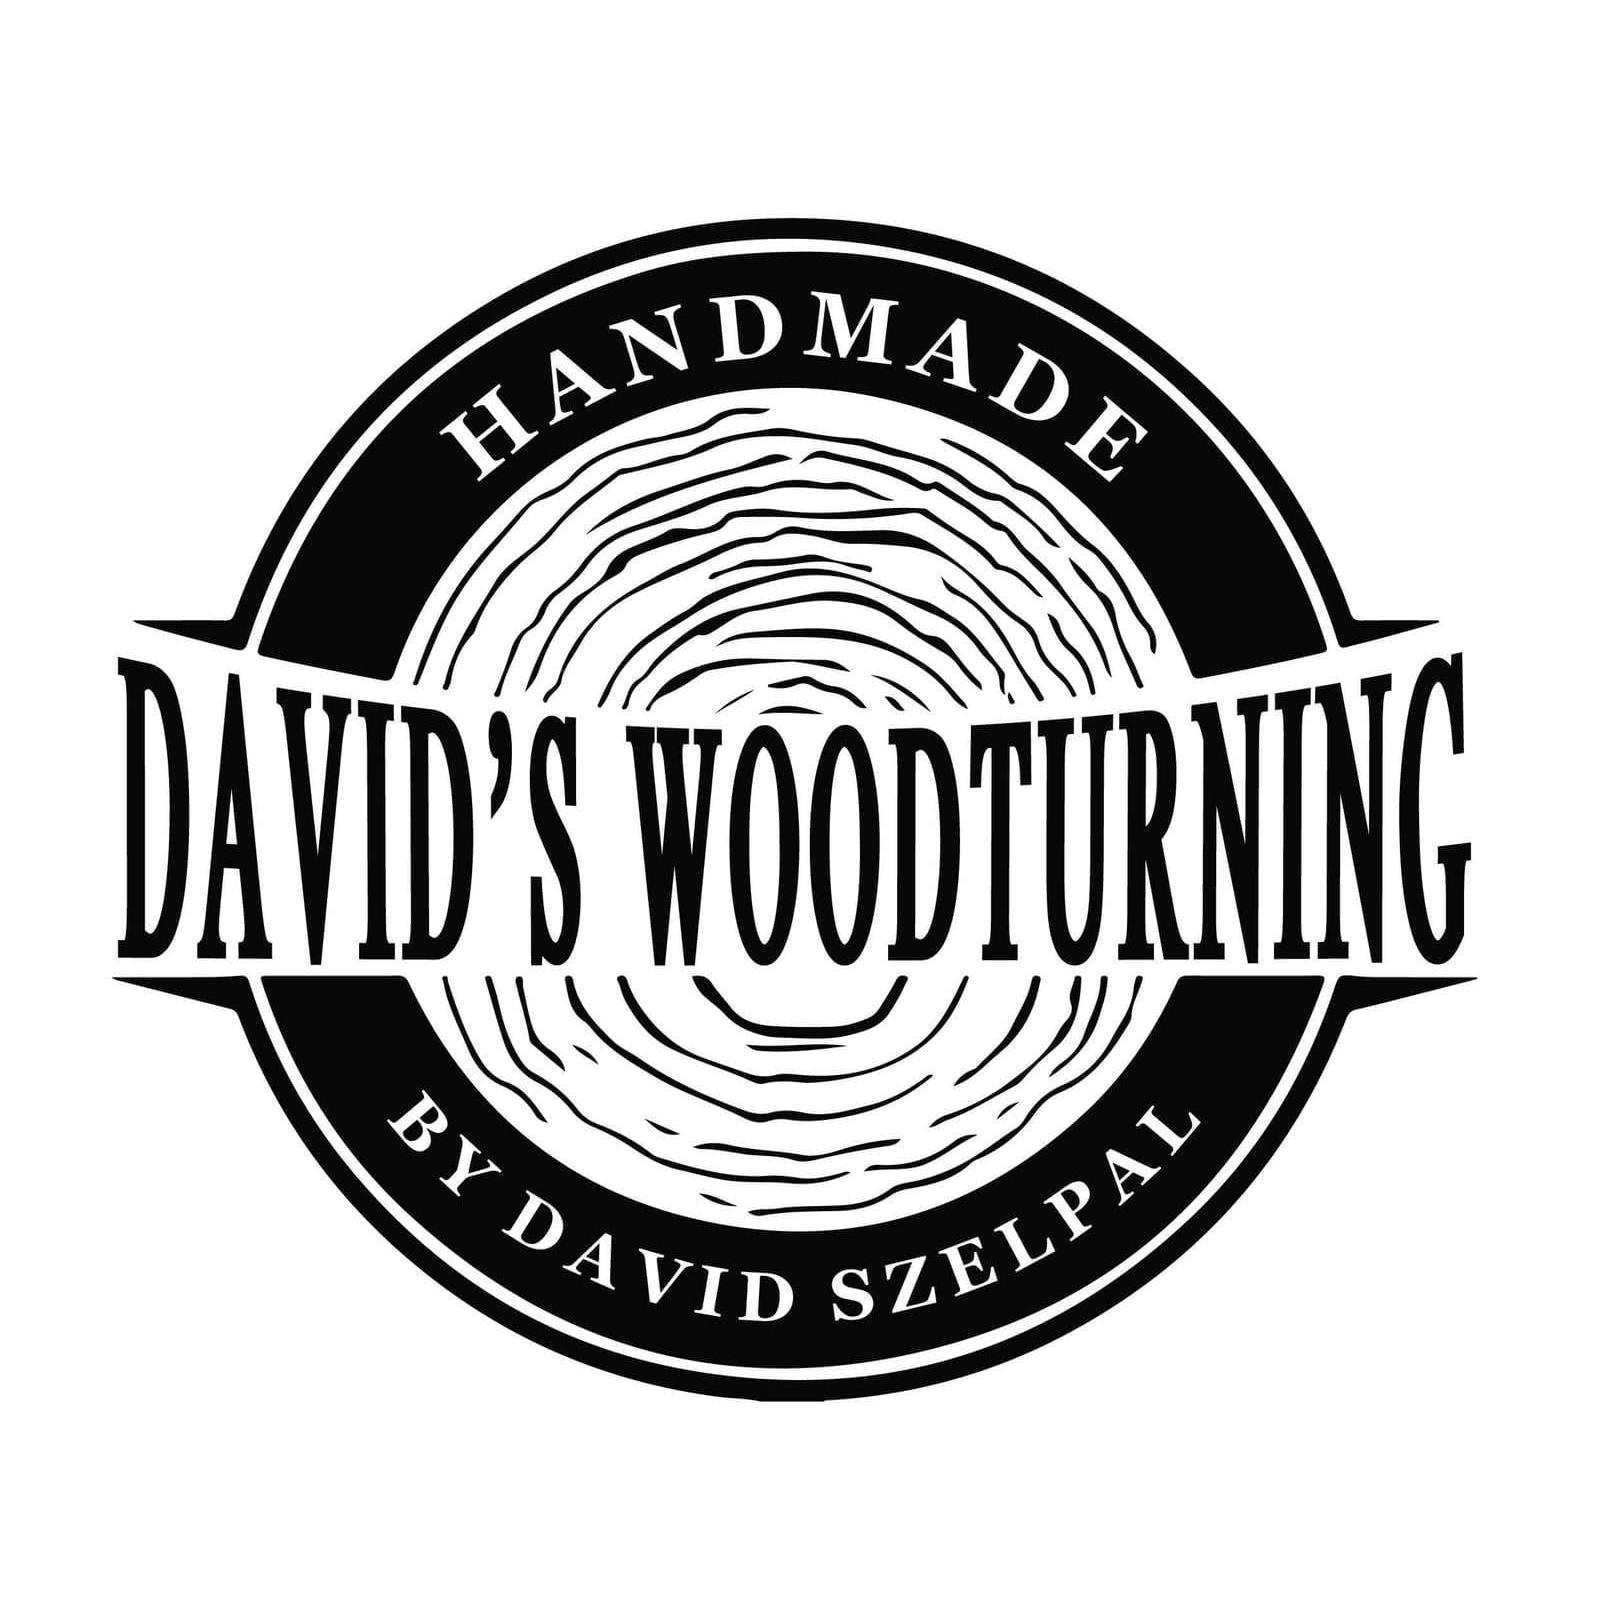 David's Woodturning Ltd - Hockley, Essex SS5 5LR - 07403 384528 | ShowMeLocal.com